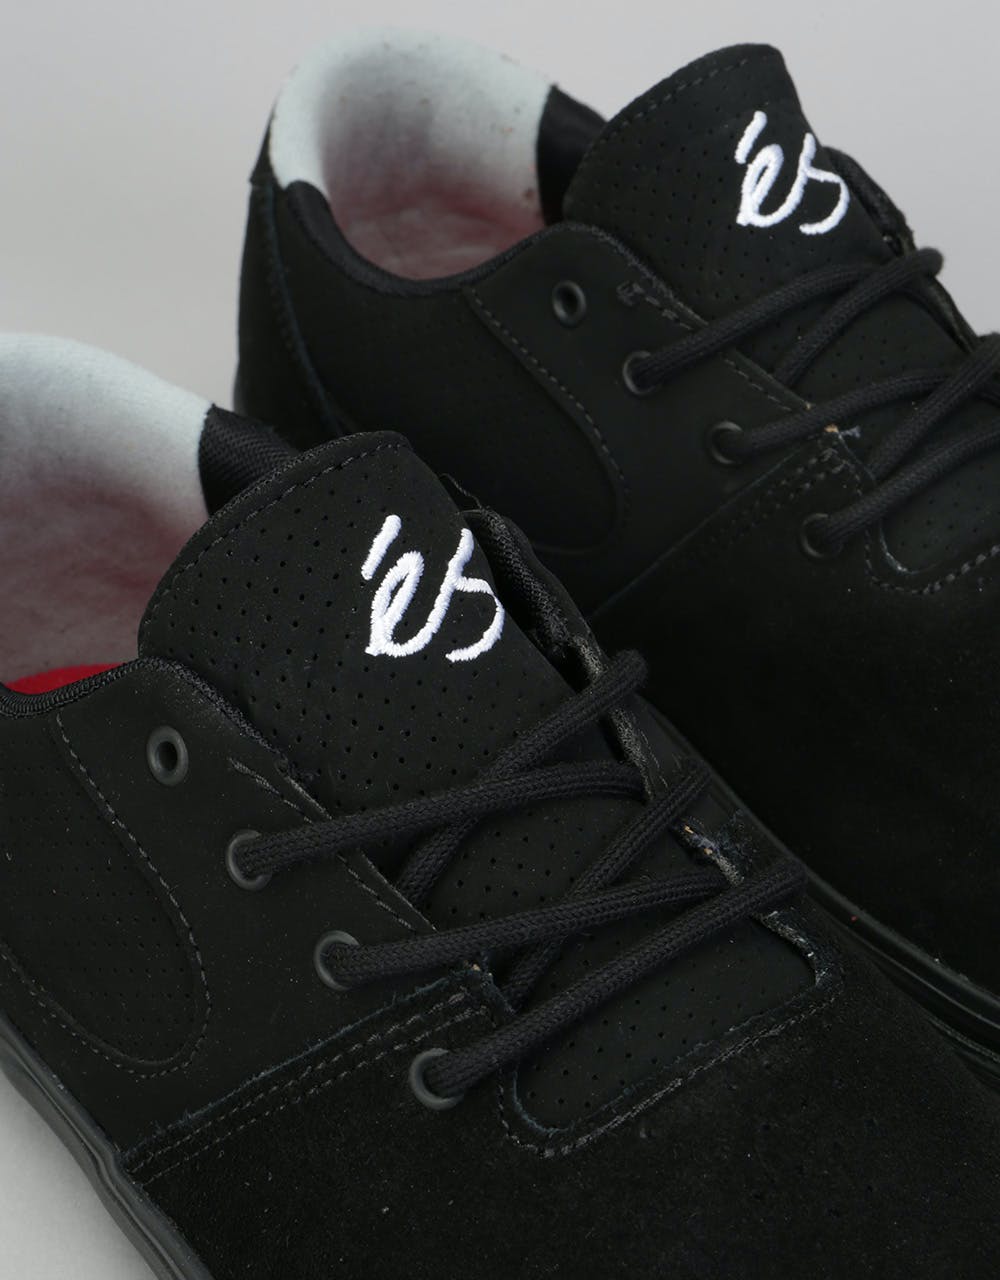 éS Accel Sq Skate Shoes - Black/Black/Grey